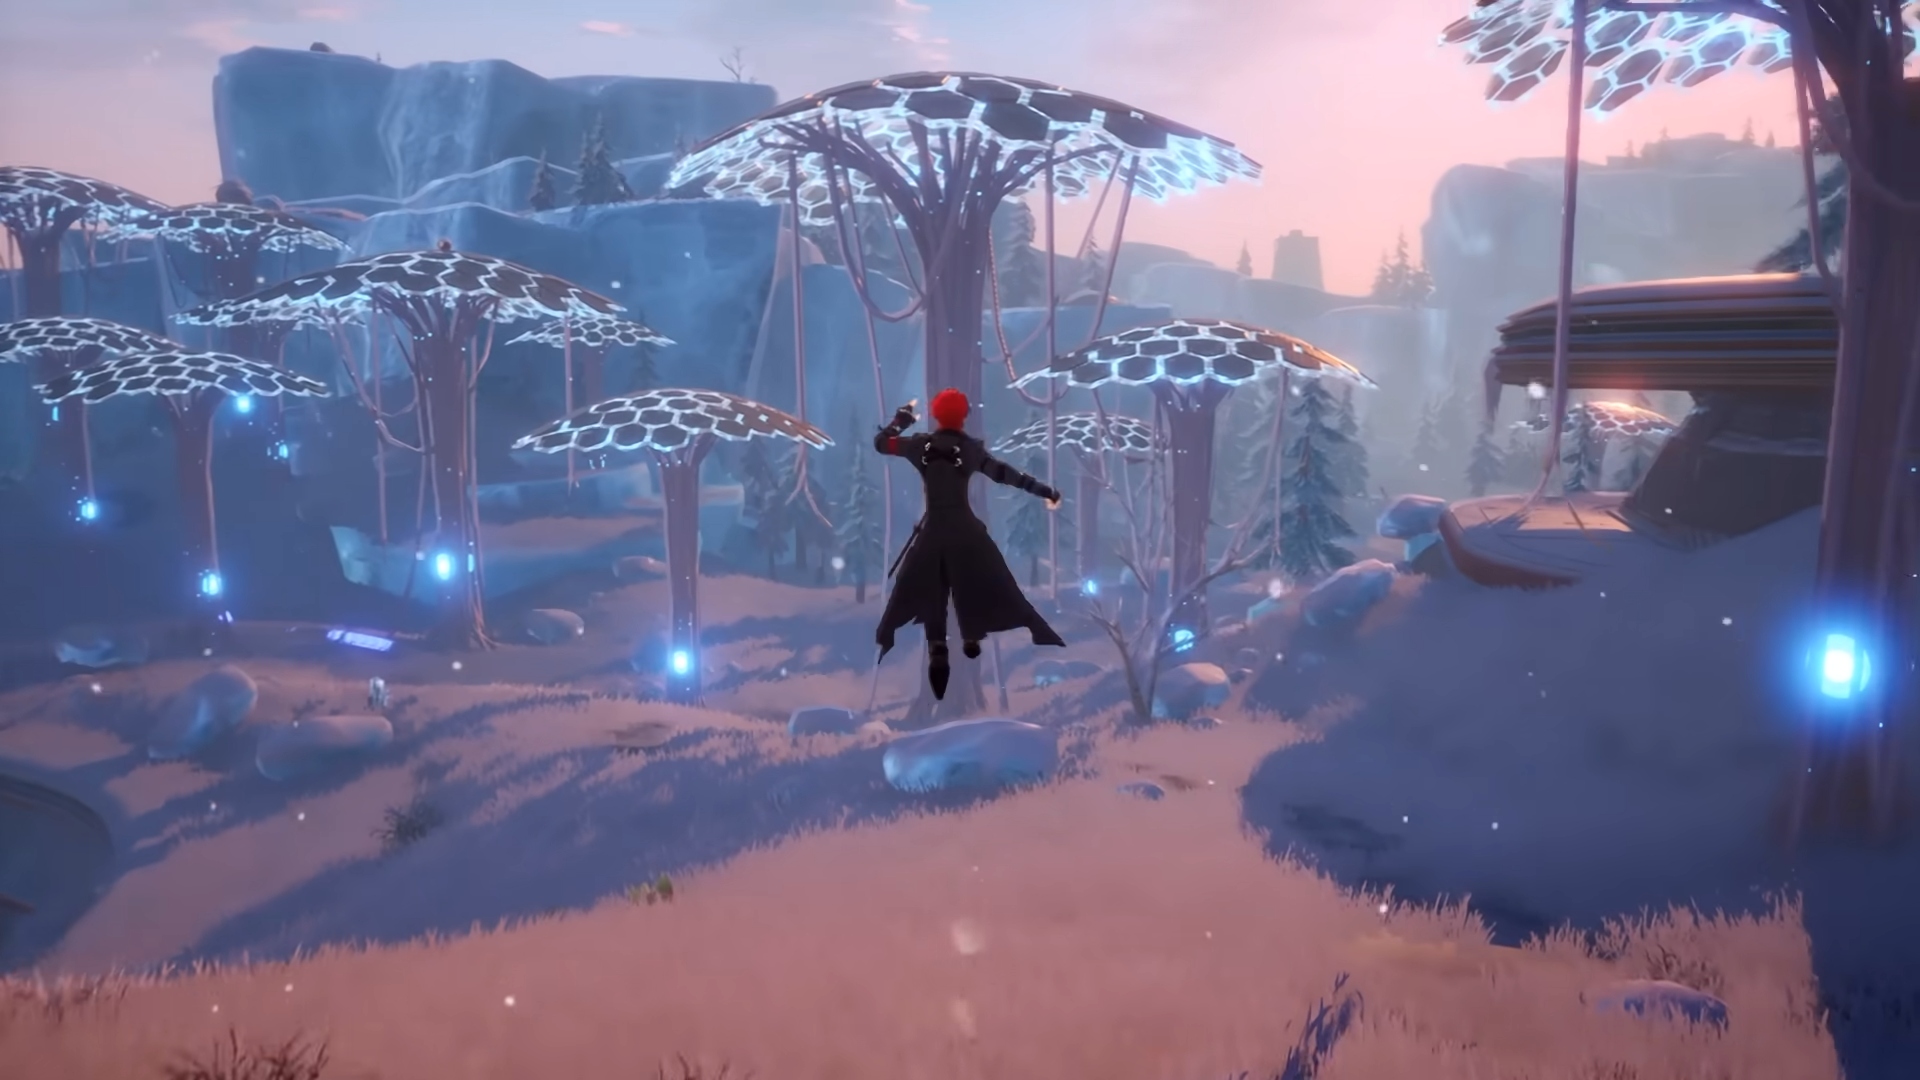 Migliori giochi per PC gratuiti: Tower of Fantasy. L'immagine mostra un uomo in un cappotto nero che salta in aria con alcuni funghi davanti a sé